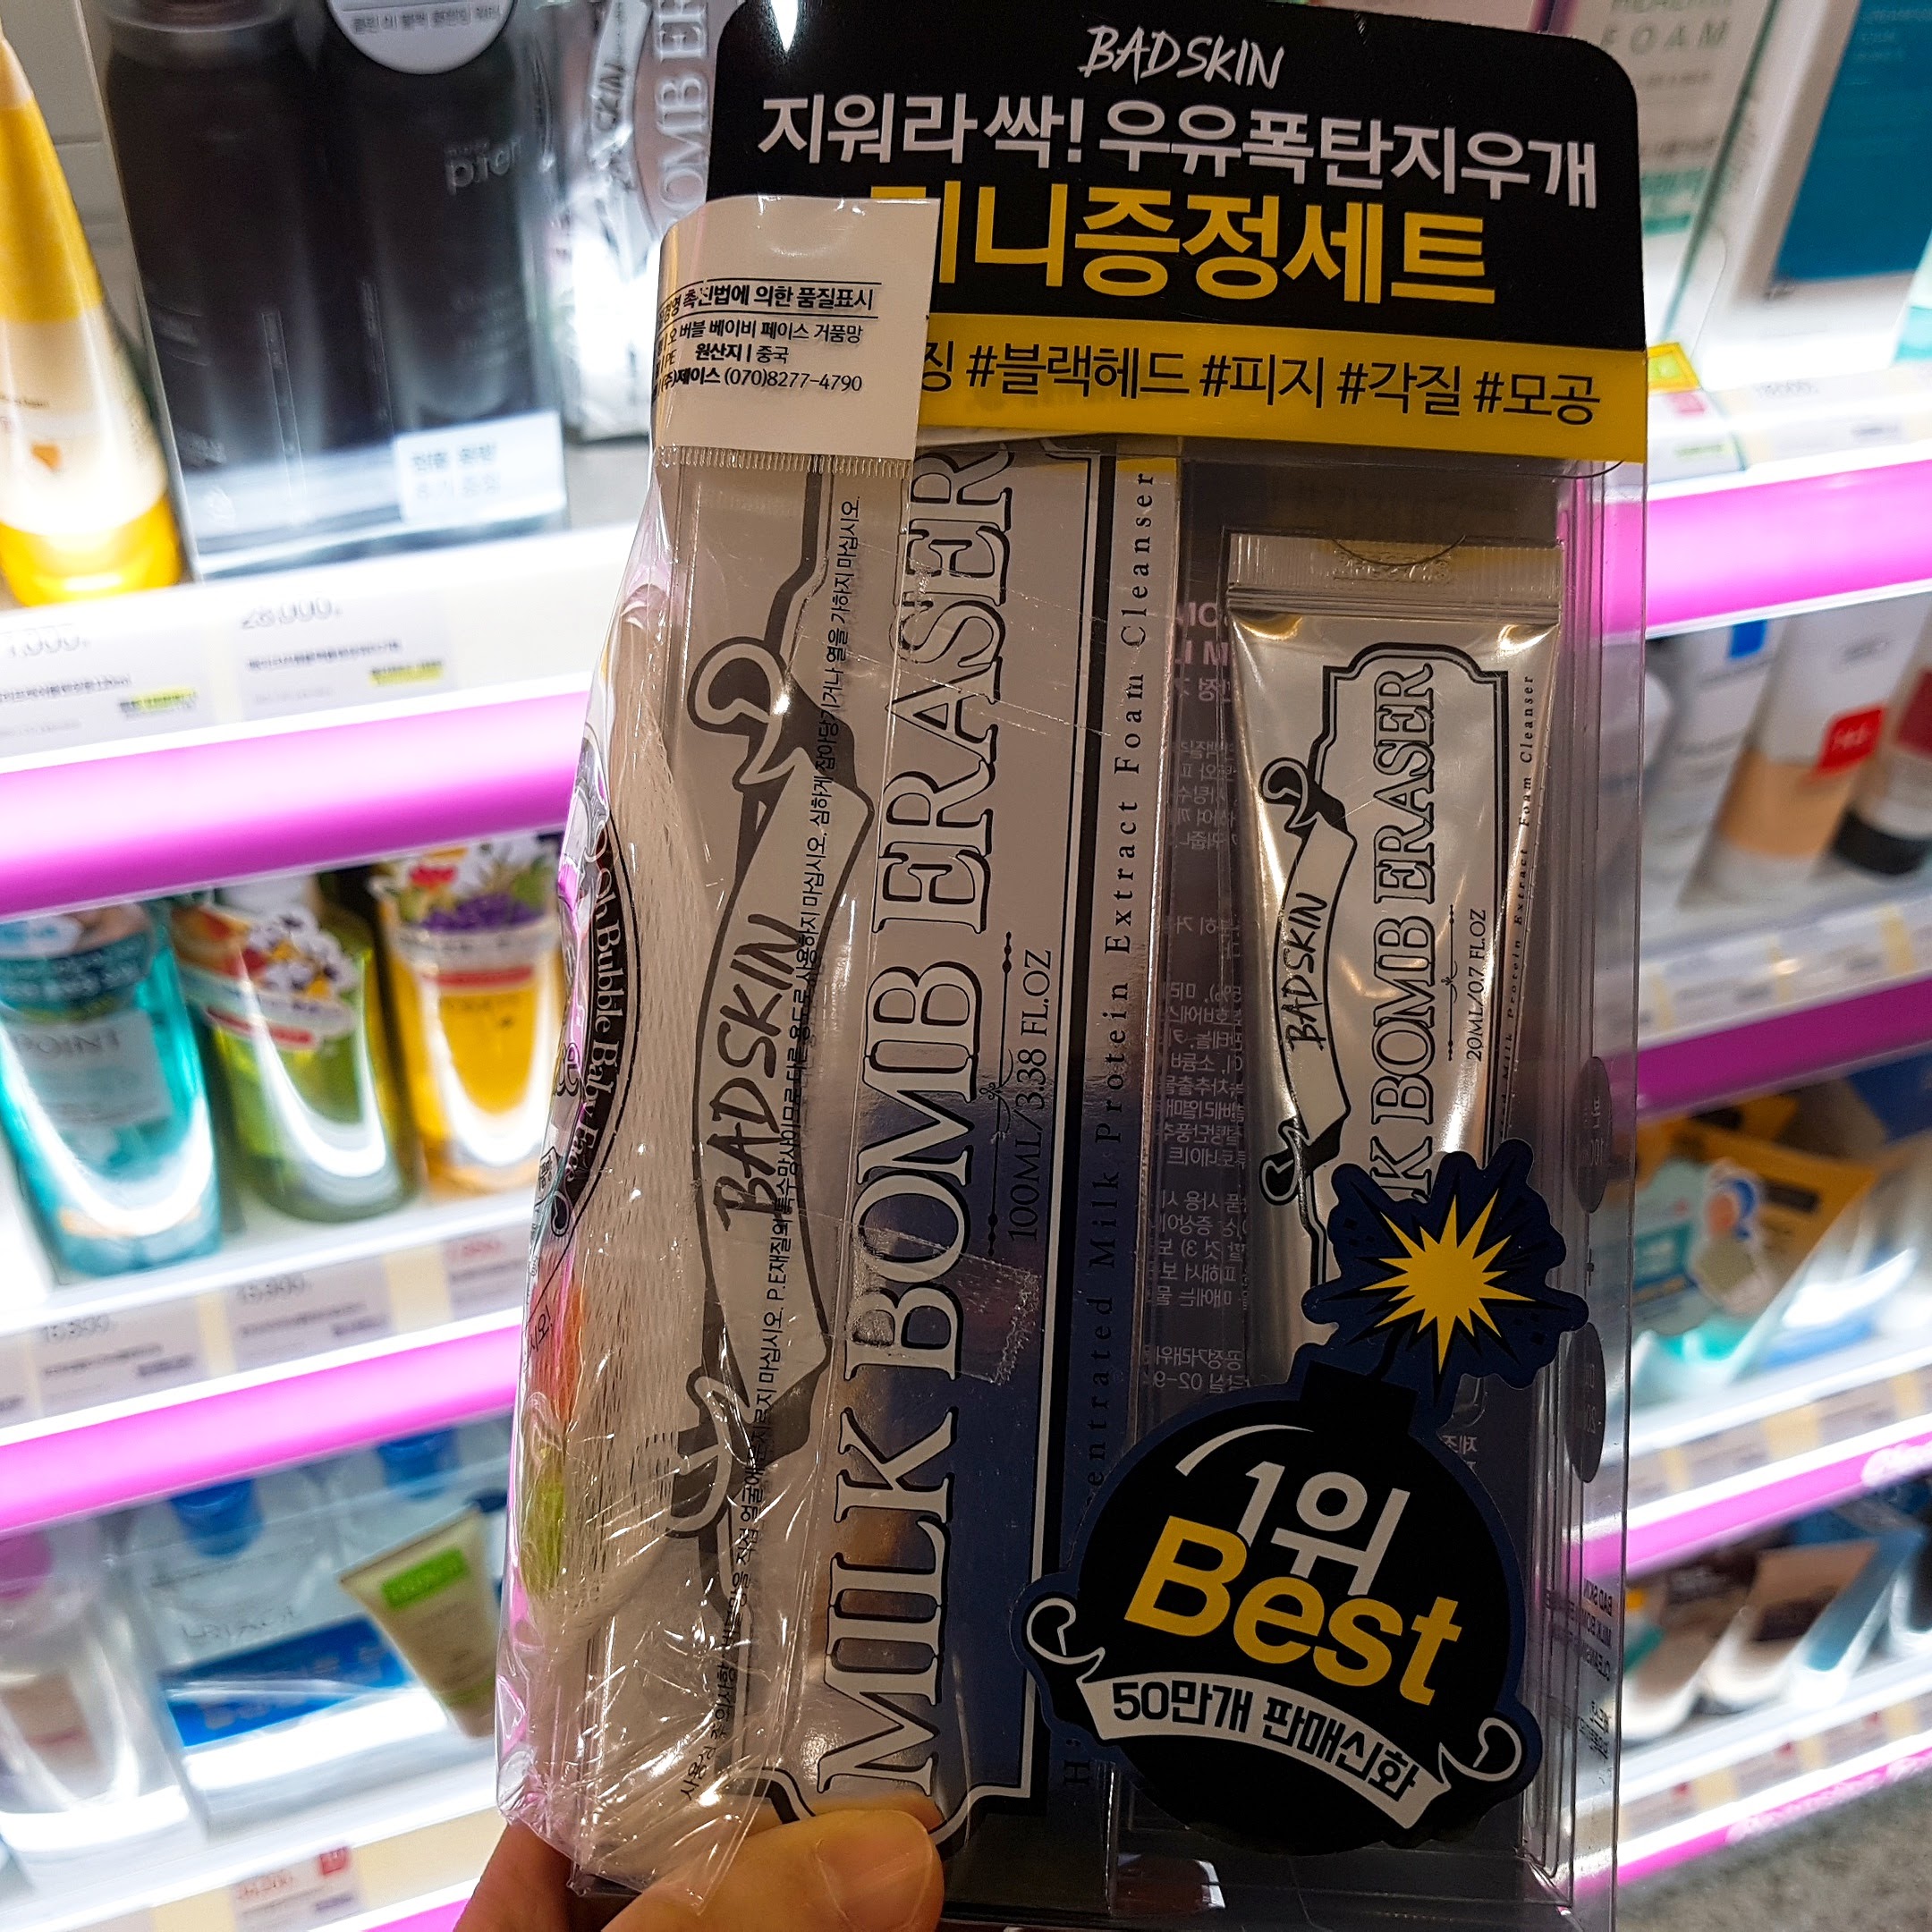 2017年韓国コスメももう終盤。  2018年韓国コスメに向けての記事です。  【韓国コスメ】韓国でしか買えない！現地のSNSで話題の化粧品ブランド「BAD SKIN」